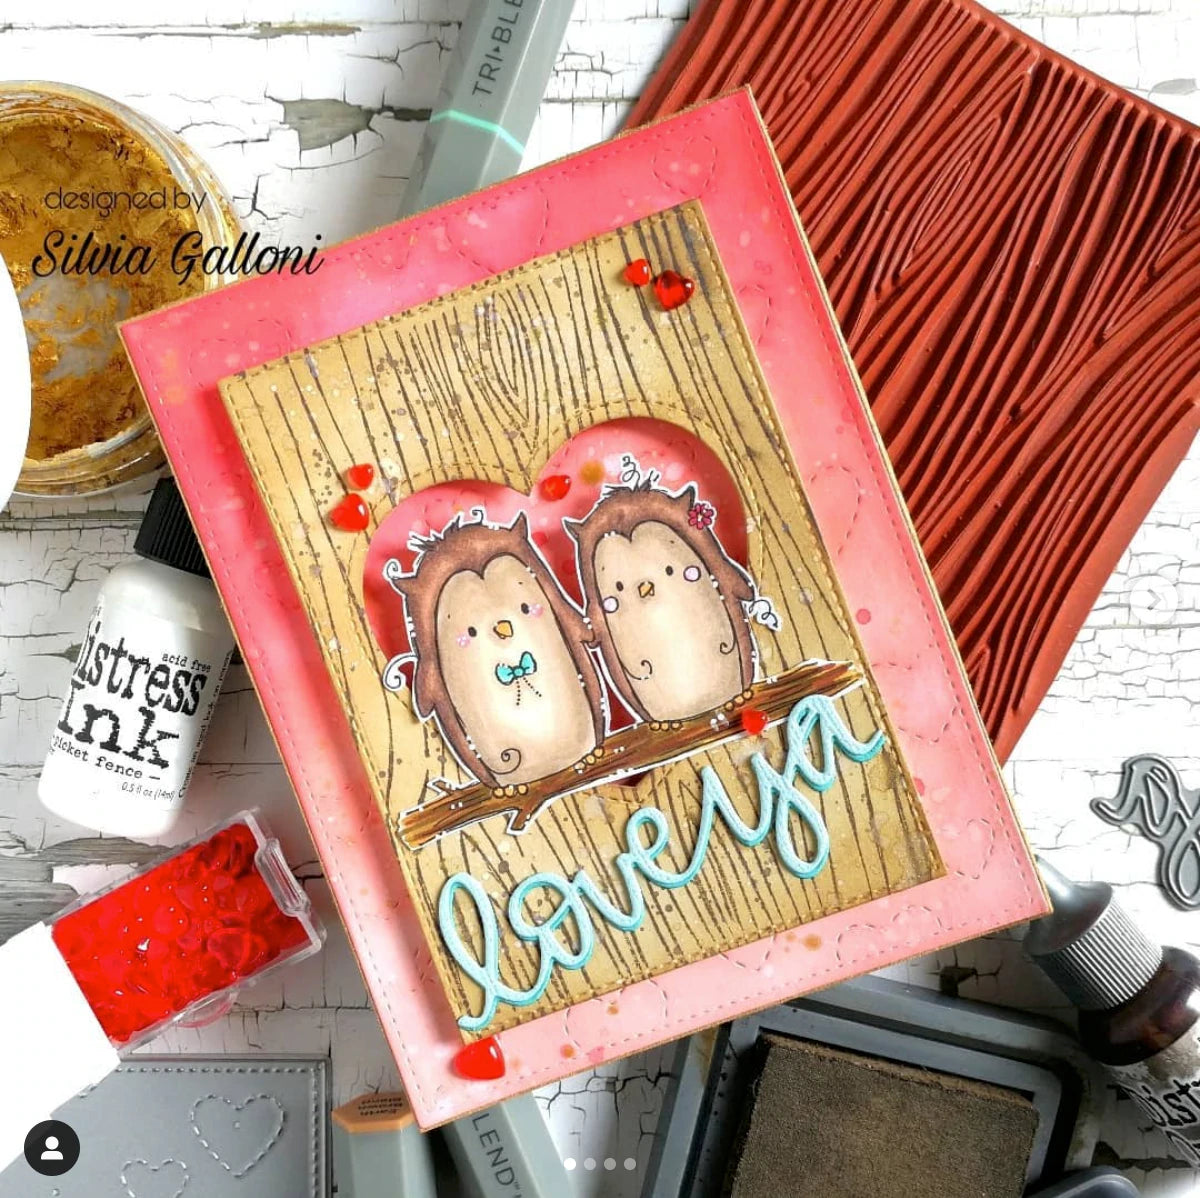 'Valentine Friends' Digital Stamp Set